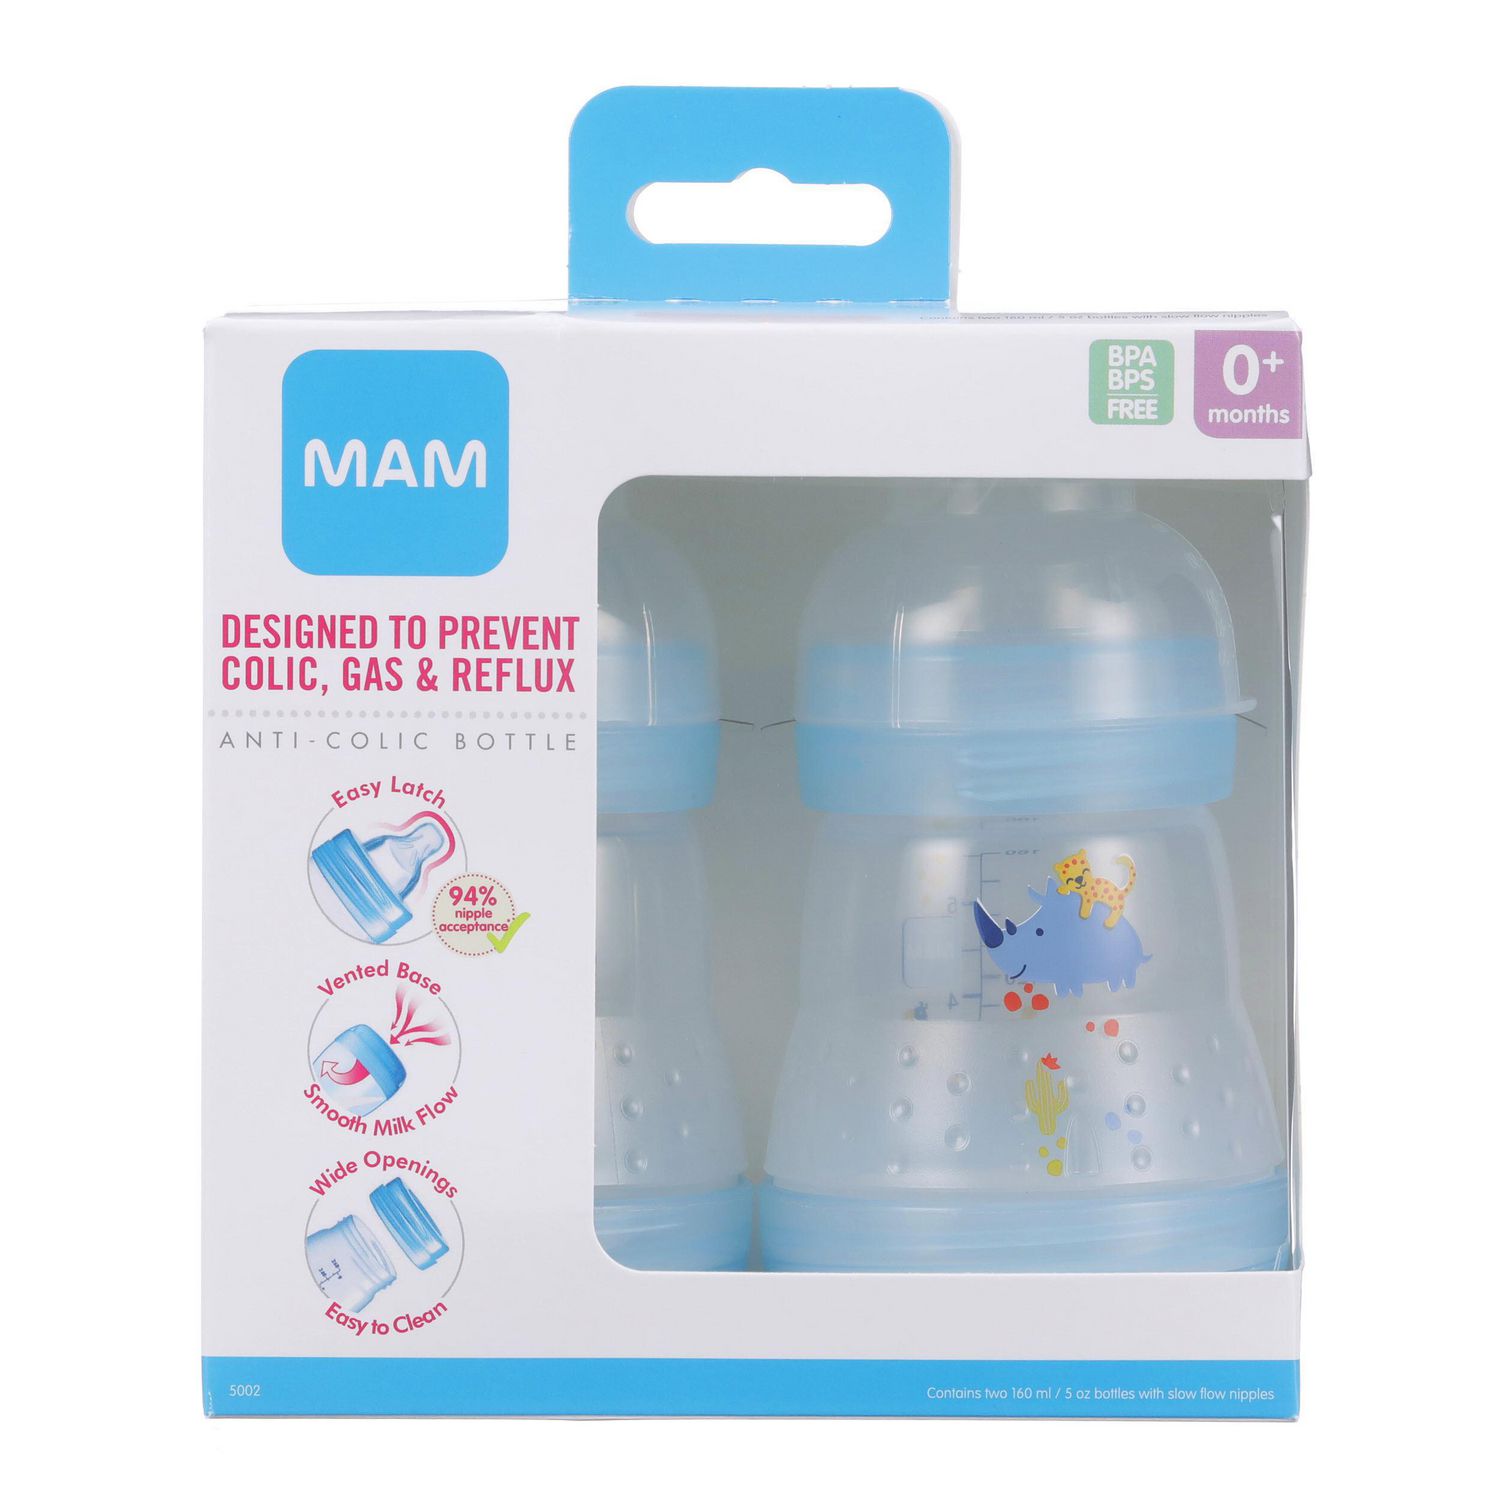 Les biberons Easy Start anti-colique MAM permettent aux bébés d'avoir moins  de ballonnements.